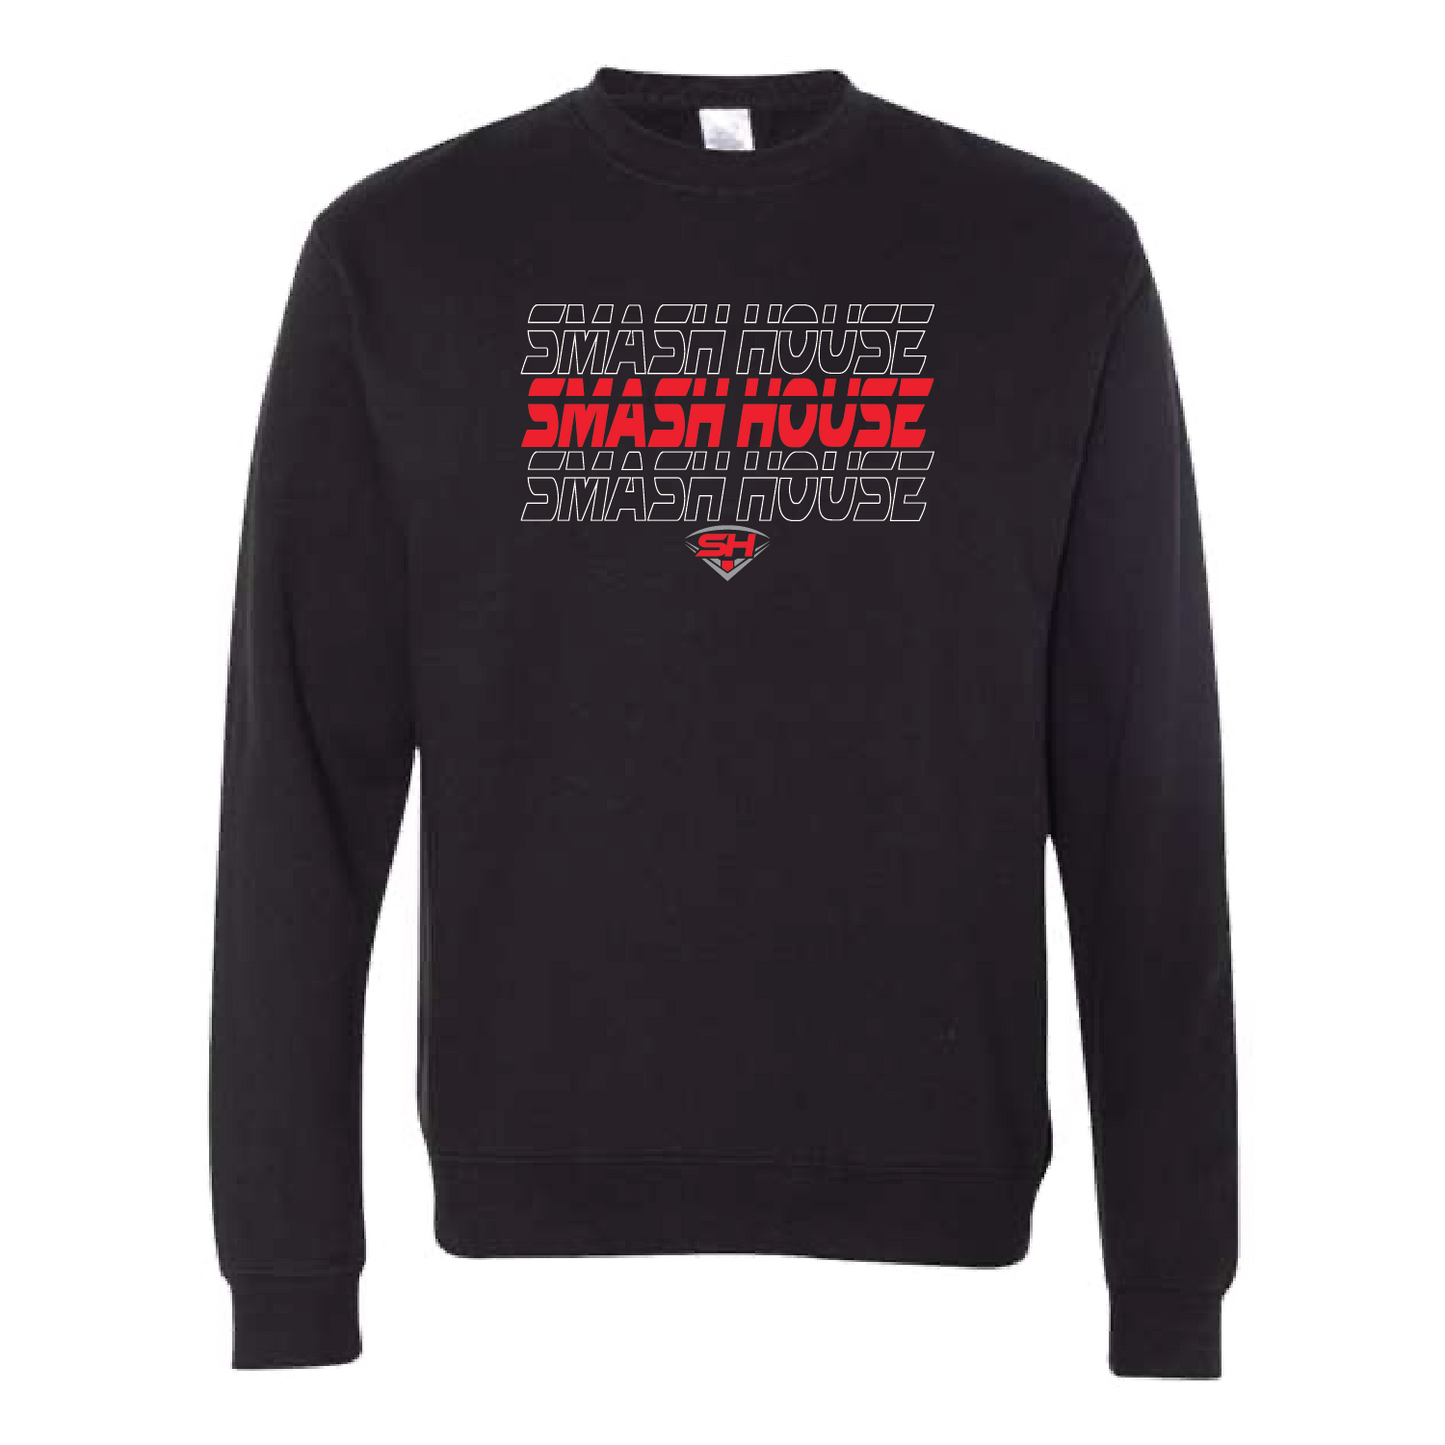 Smash House Stacked Unisex Sweatshirt